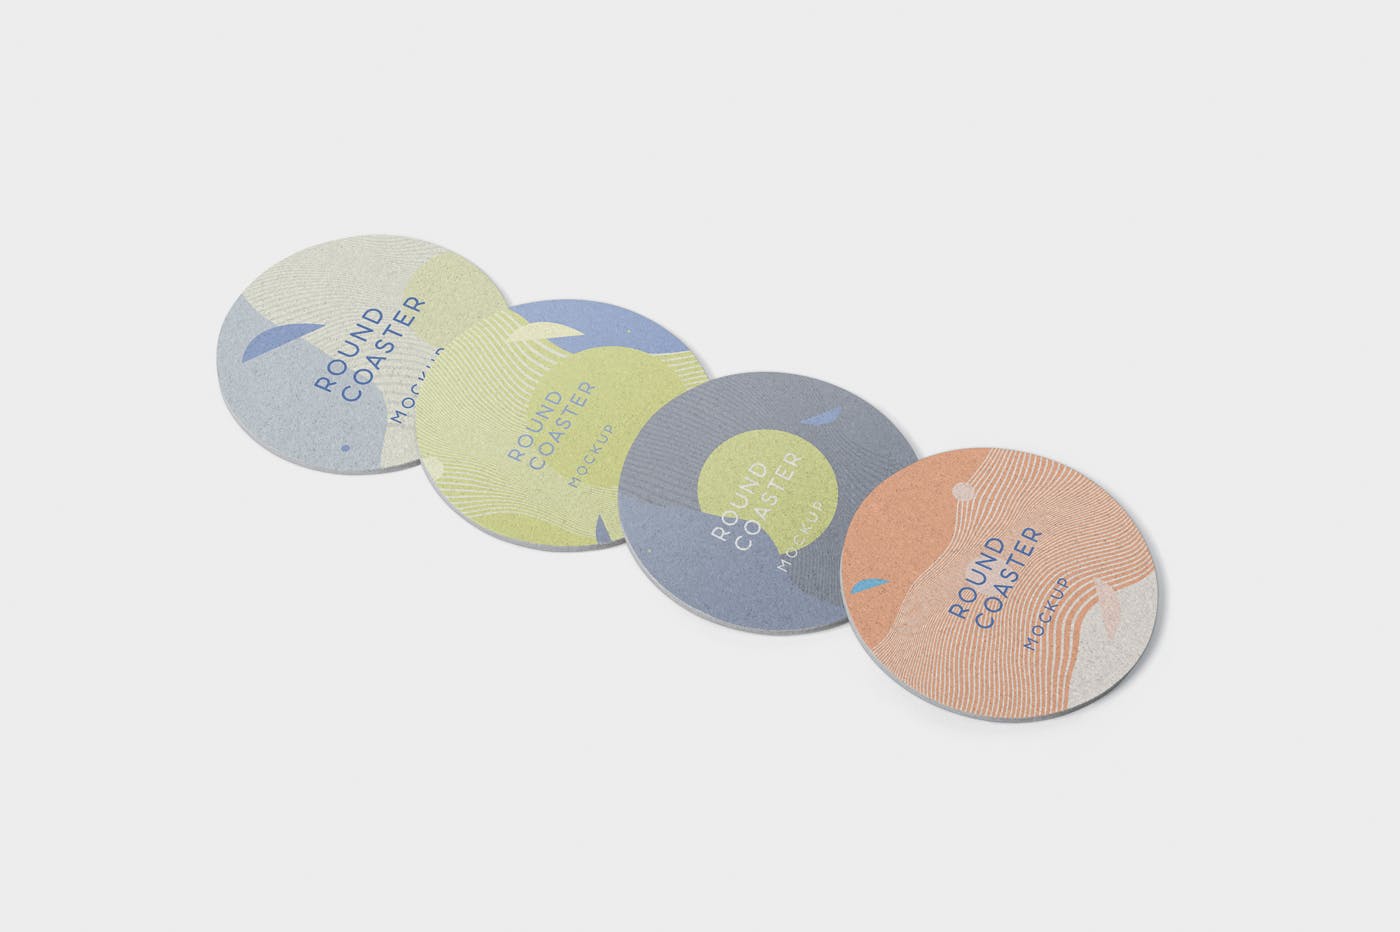 圆形杯垫图案设计效果图16设计网精选 Round Coaster Mock-Up – Medium Size插图(2)